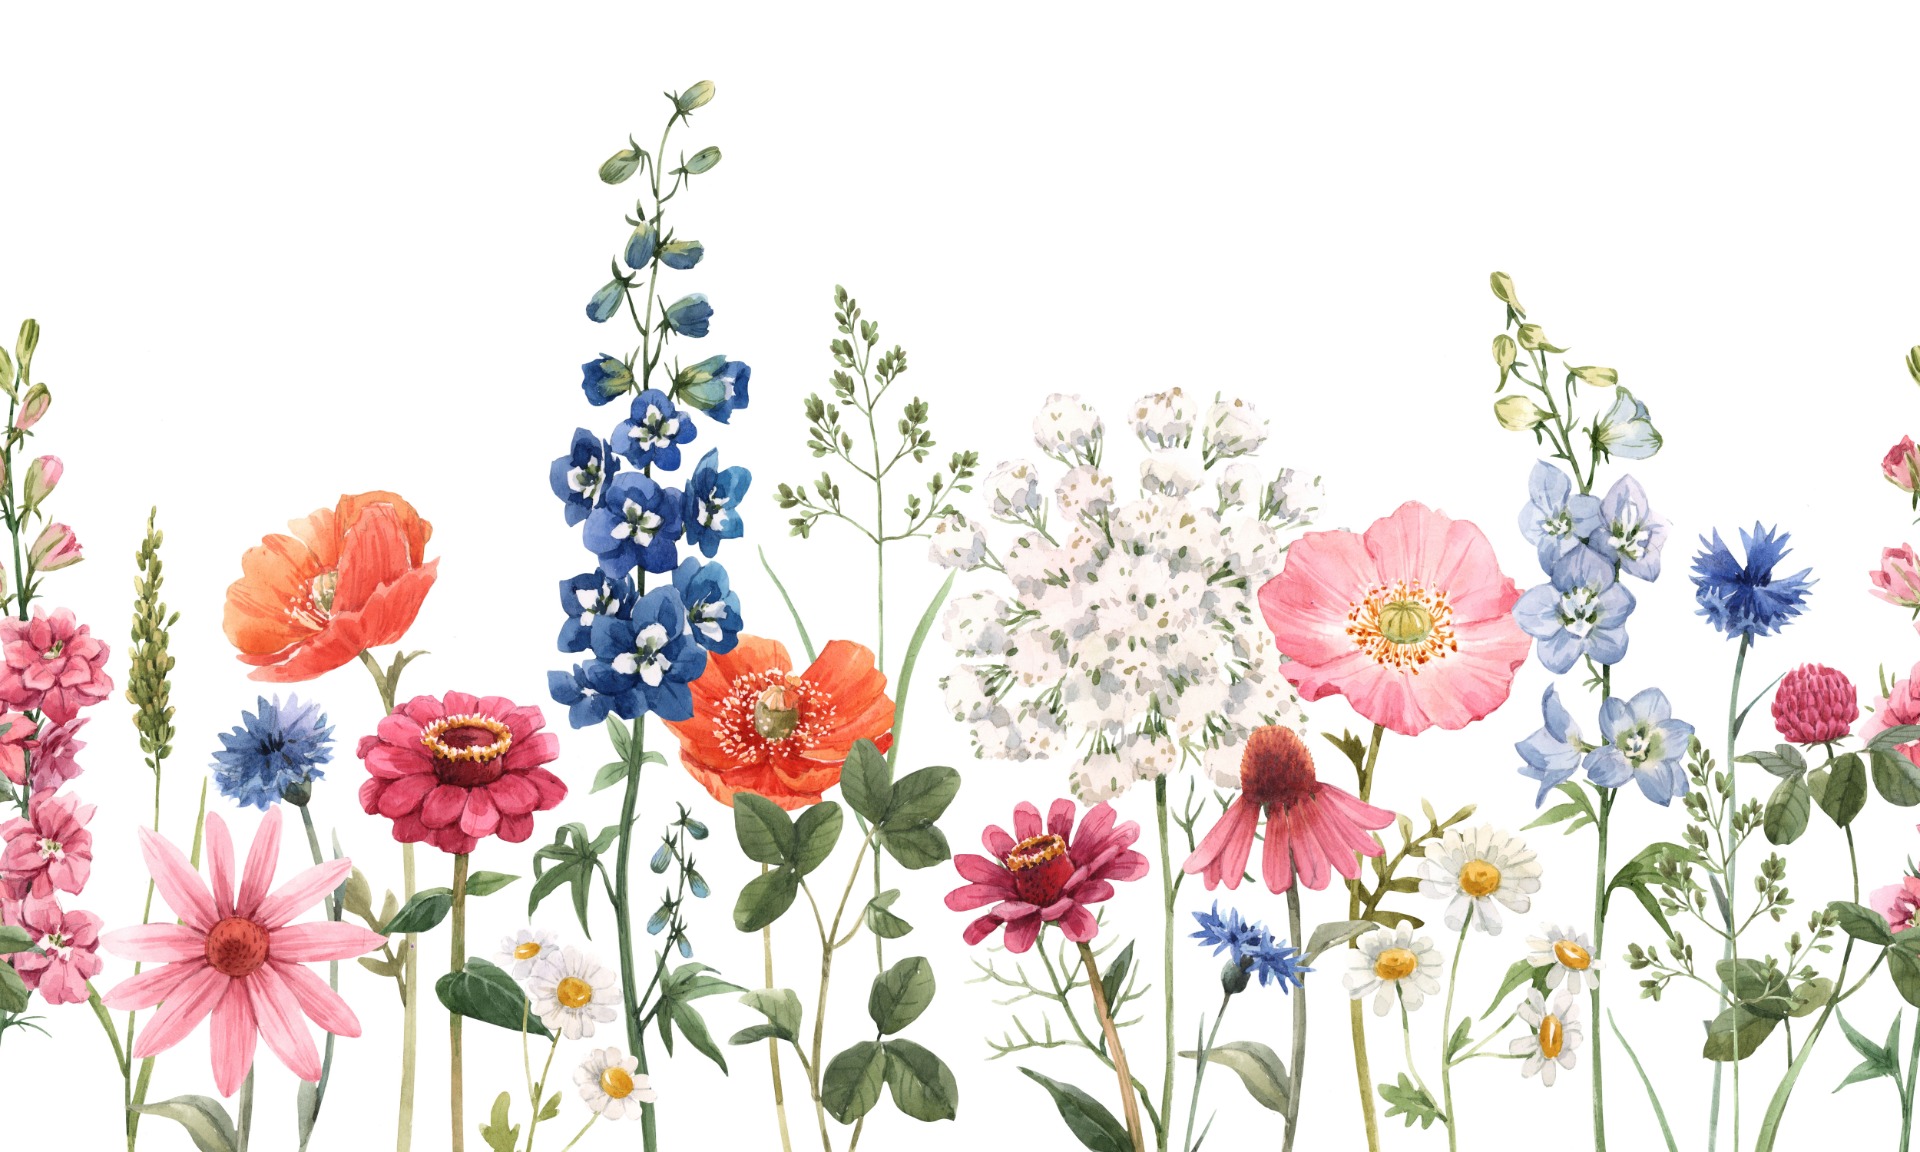 Bobbi Beck eco-friendly Blue bright maximalist floral wallpaper | DIY at B&Q